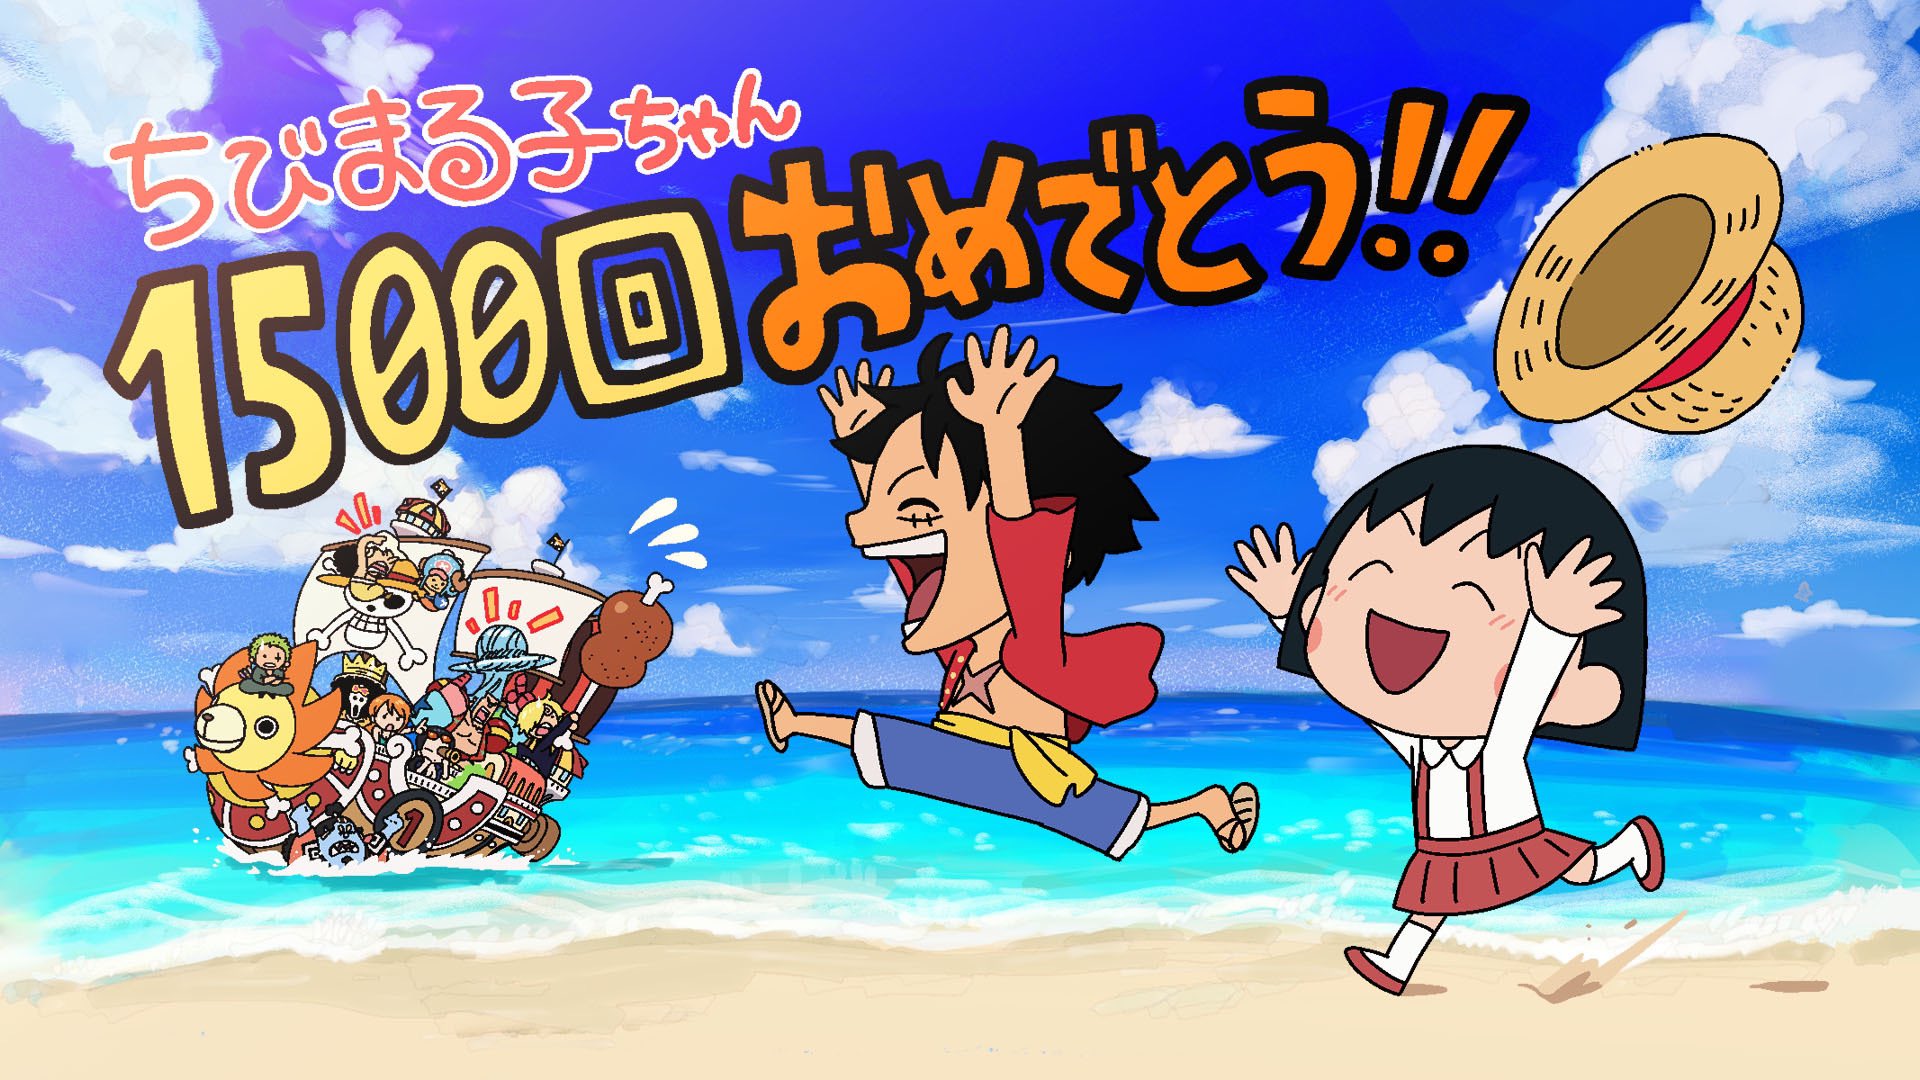 One Piece スタッフ 公式 Official お祝い ちびまる子ちゃん は本日の放送で1500回を迎えます その記念すべき日に Tvアニメ Onepiece にまる子ちゃんがチラッと登場してくれました 見逃した方は Tver をチェック T Co